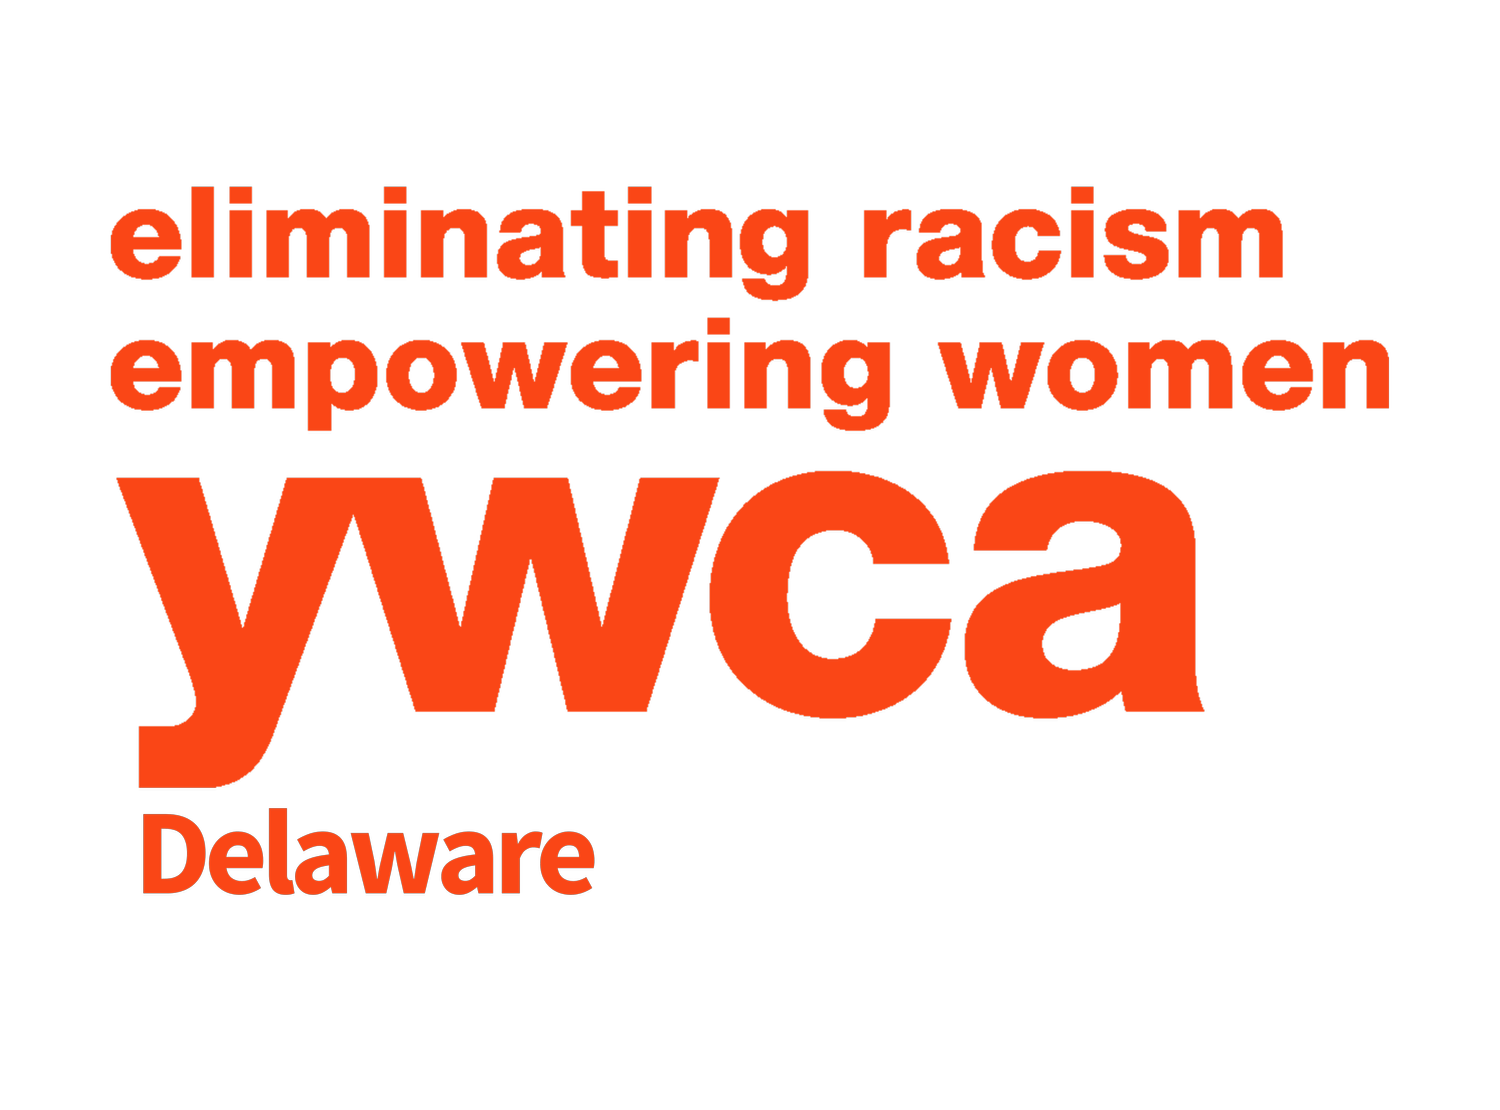 YWCA Delaware